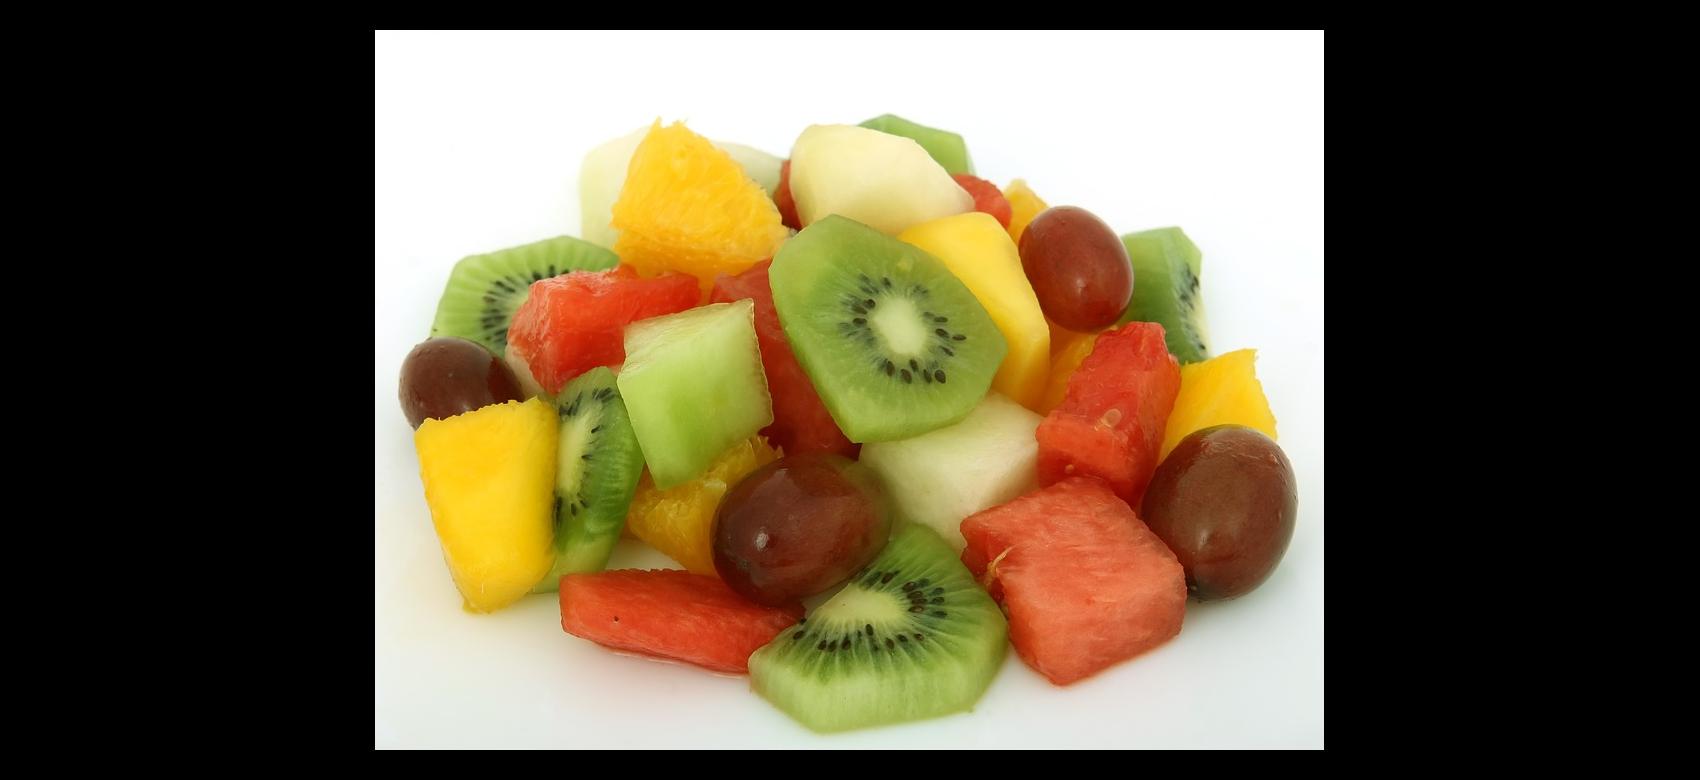 Plato de frutas variadas